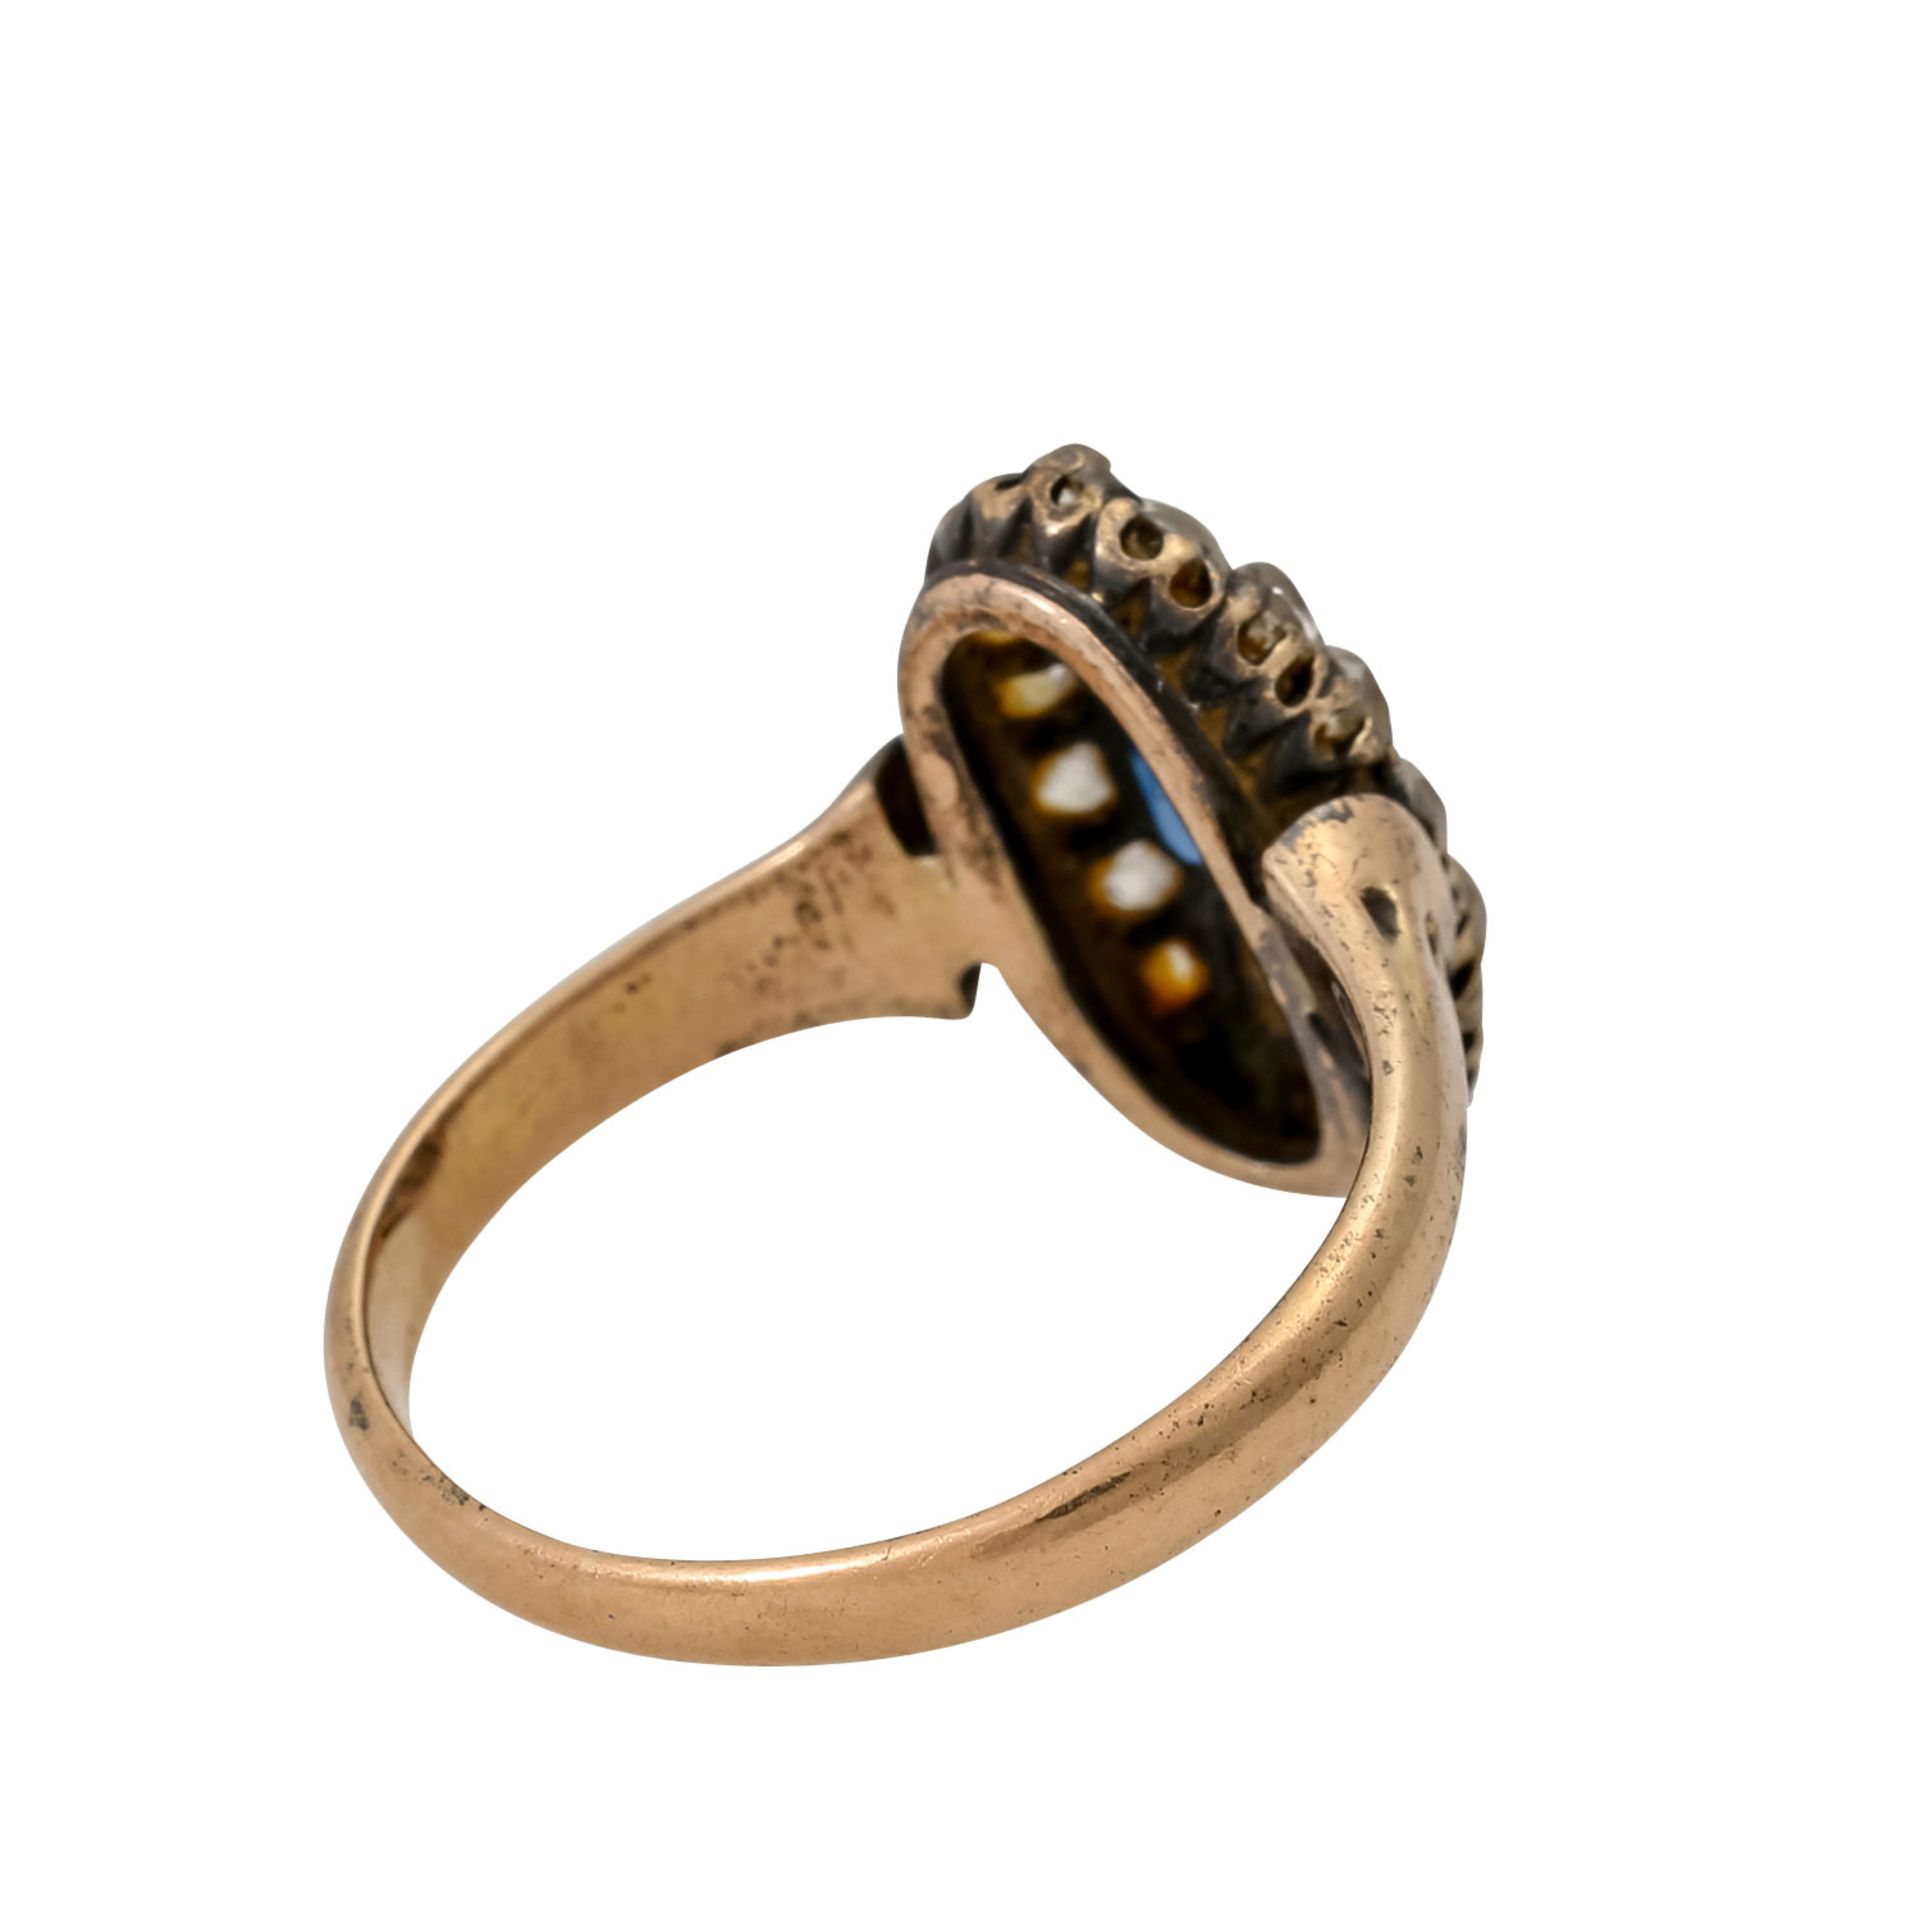 Antiker Ring mit ovalem Saphir und Altschliffdiamanten, zus. ca. 0,6 ct, - Bild 3 aus 4